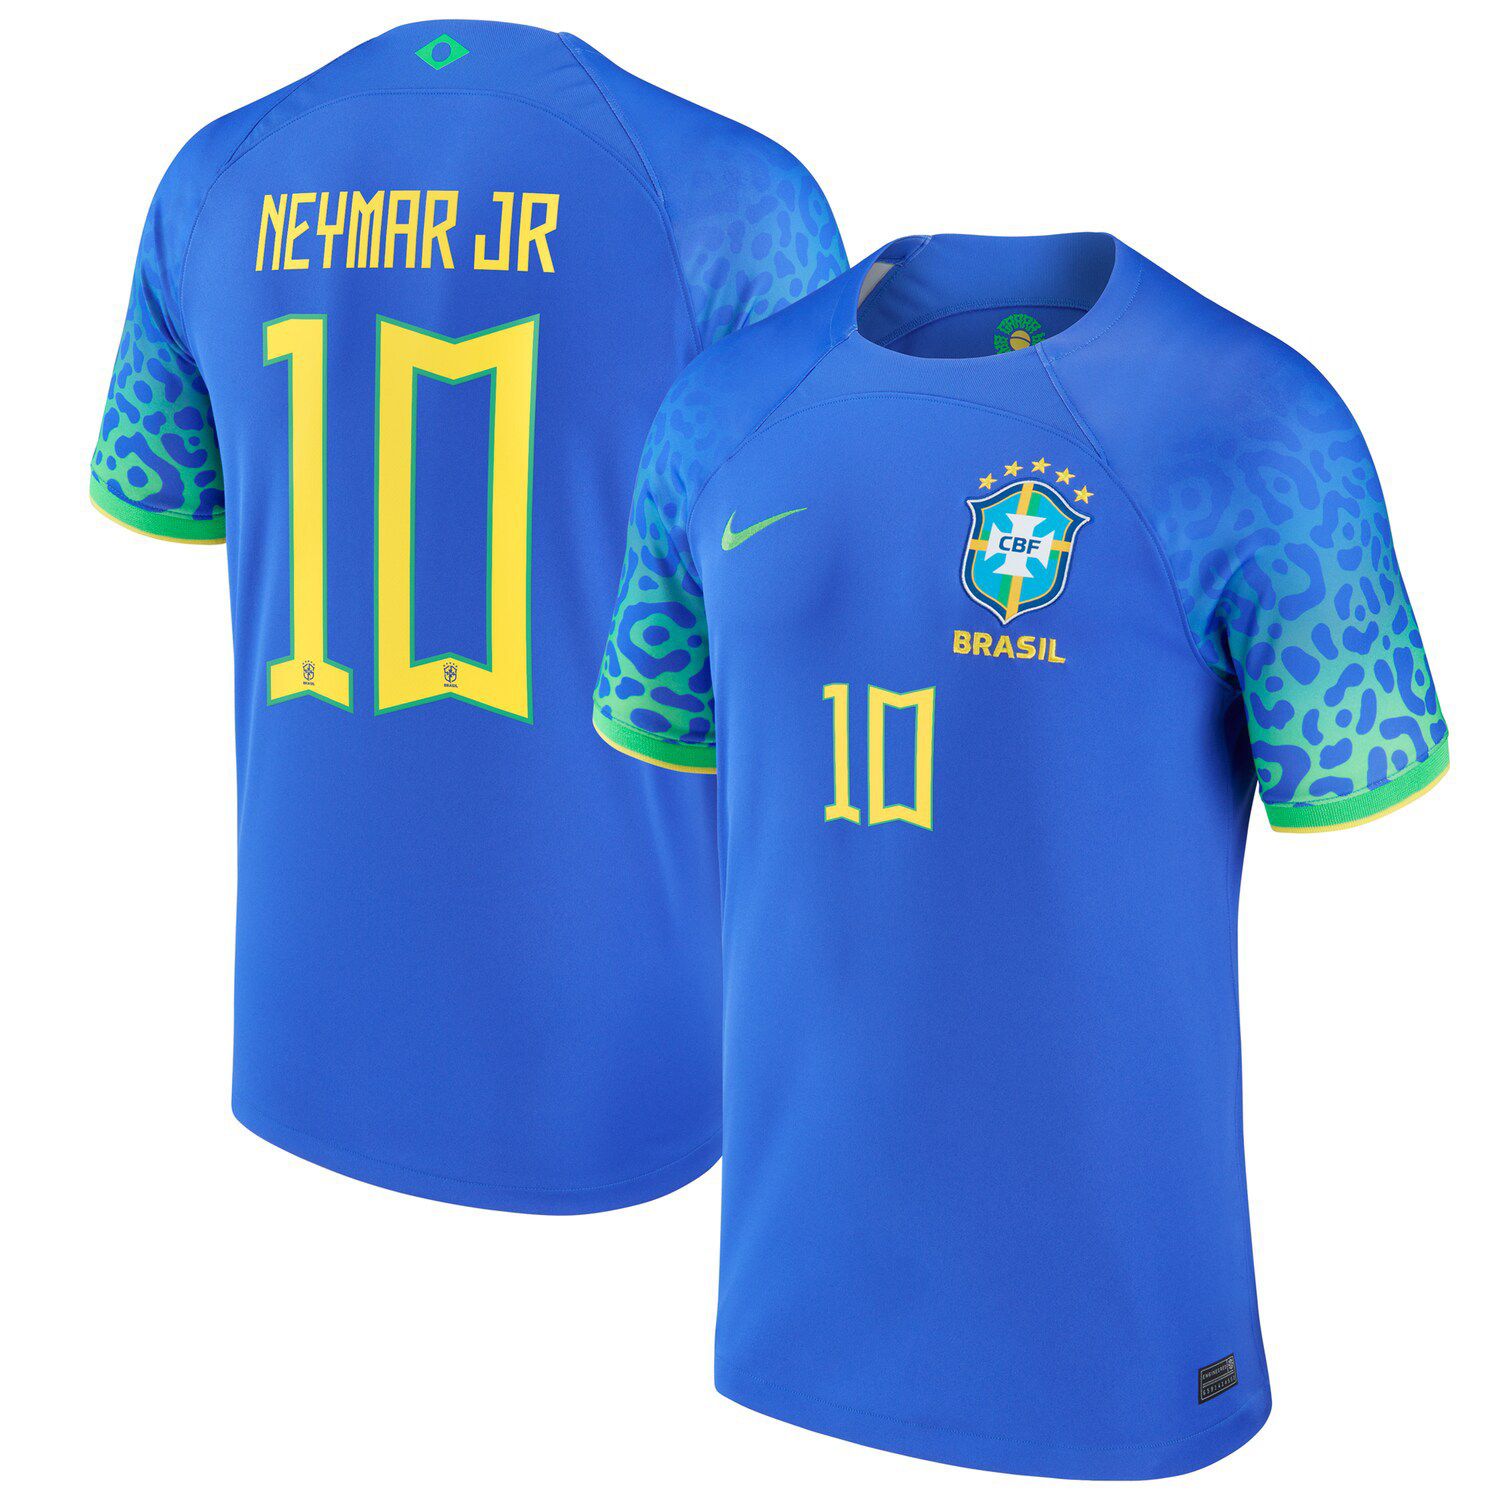 Neymar Jr. collector's Brazil jersey